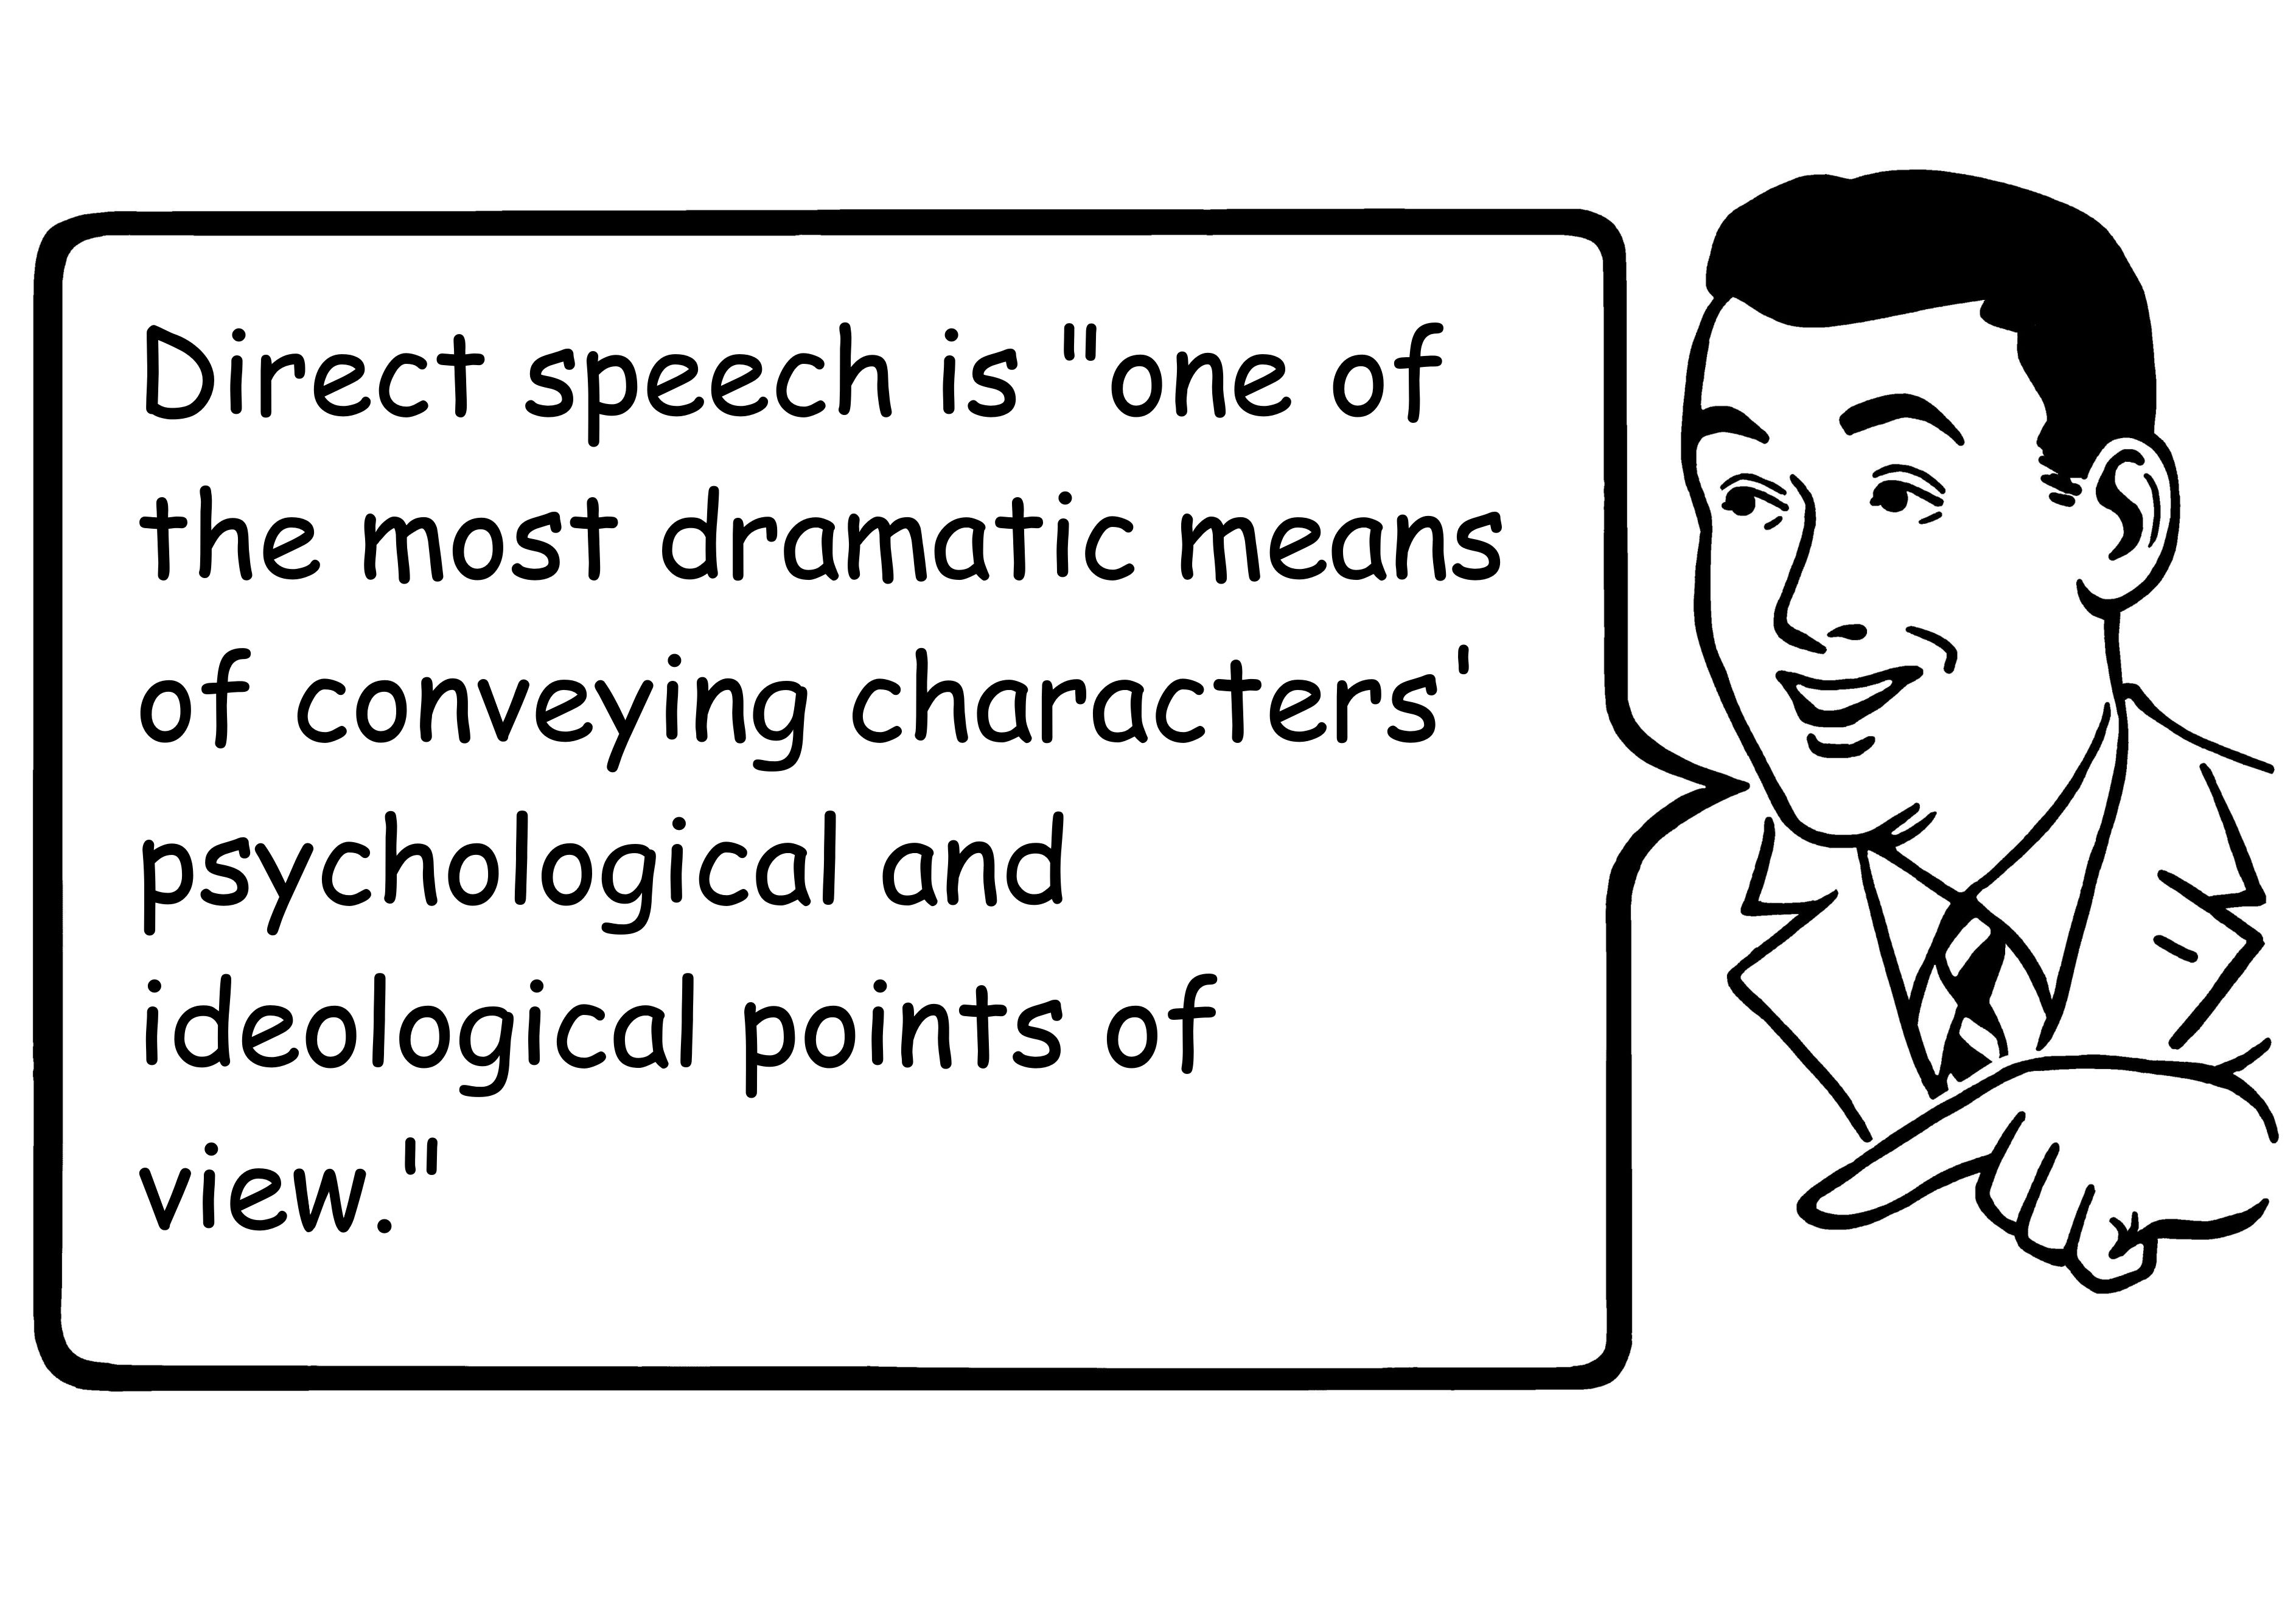 a direct speech definition